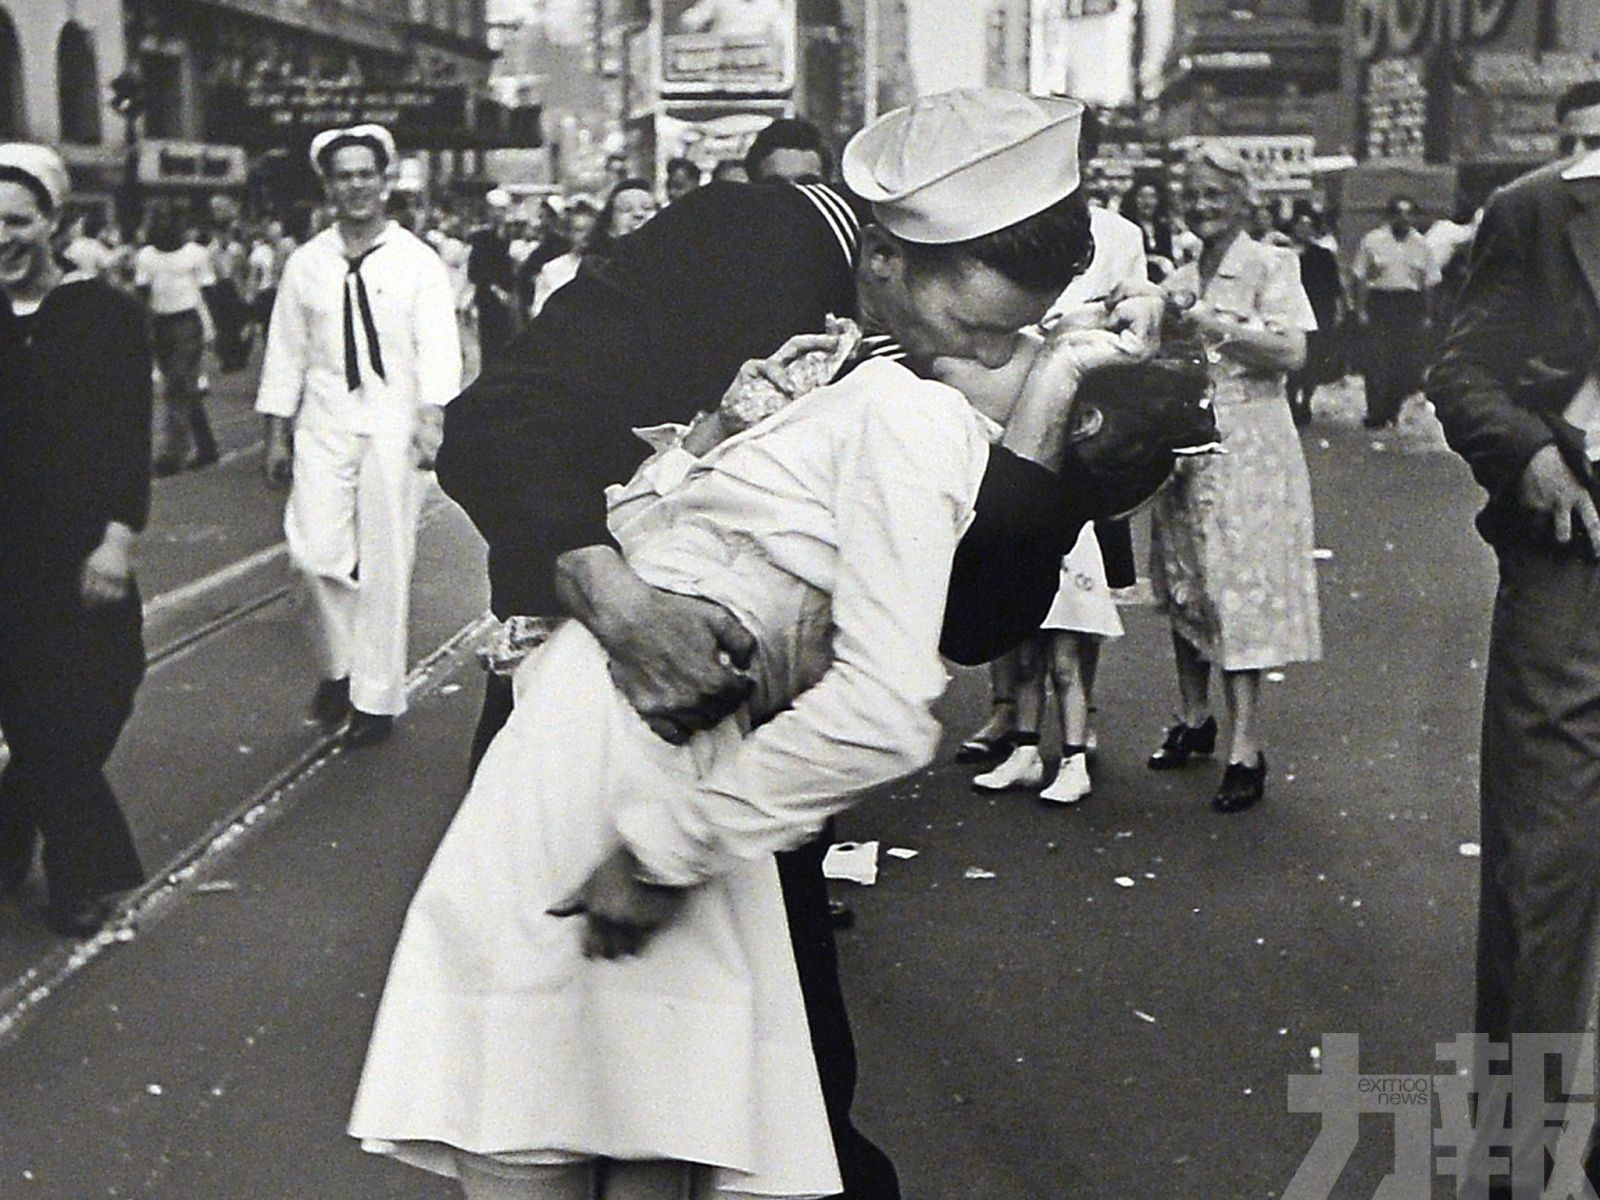 【勝利之吻】二戰經典照片男主角逝世 終年95歲